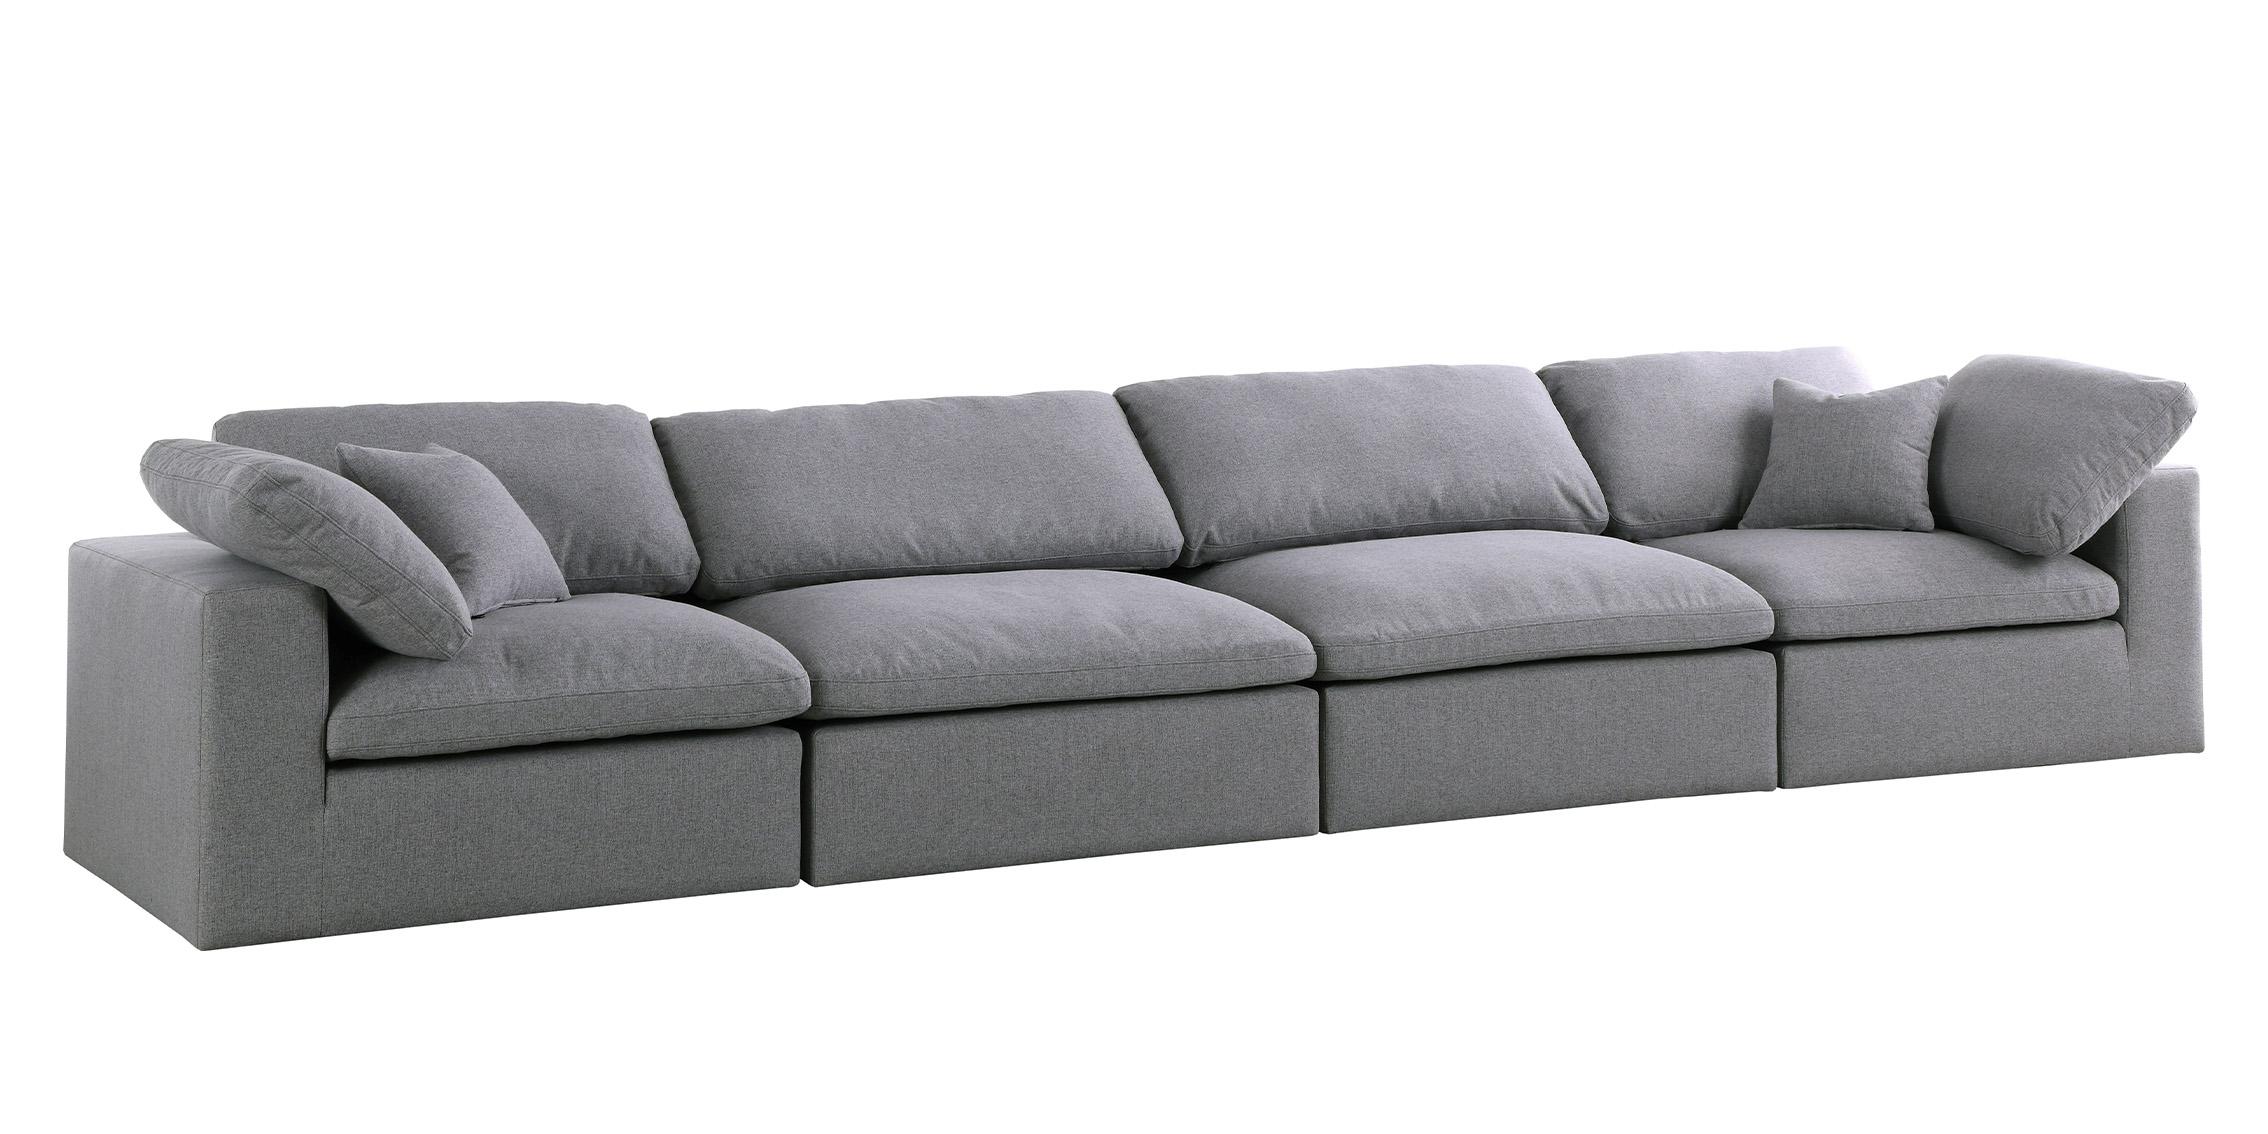 

    
Serene Grey Linen Textured Fabric Deluxe Comfort Modular Sofa S158 Meridian
